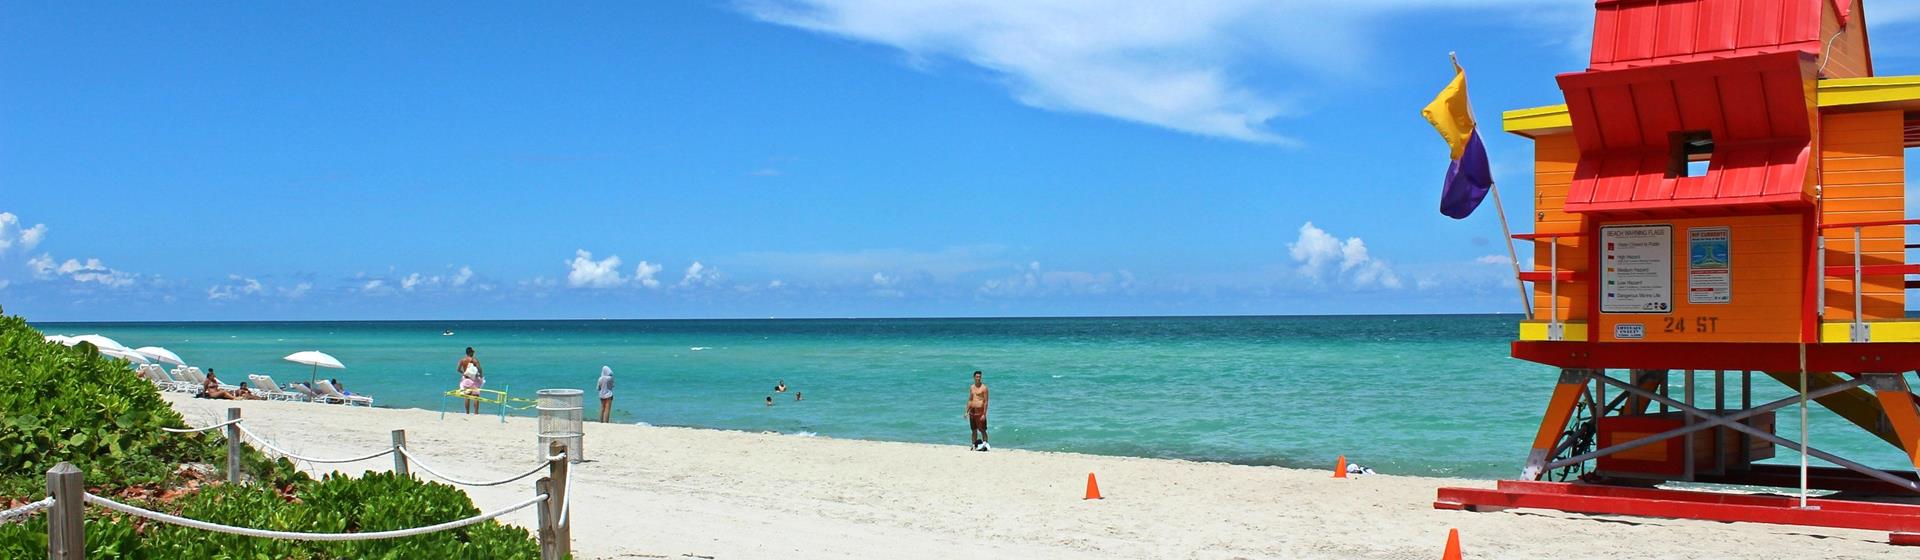 Holidays & City Breaks to Miami